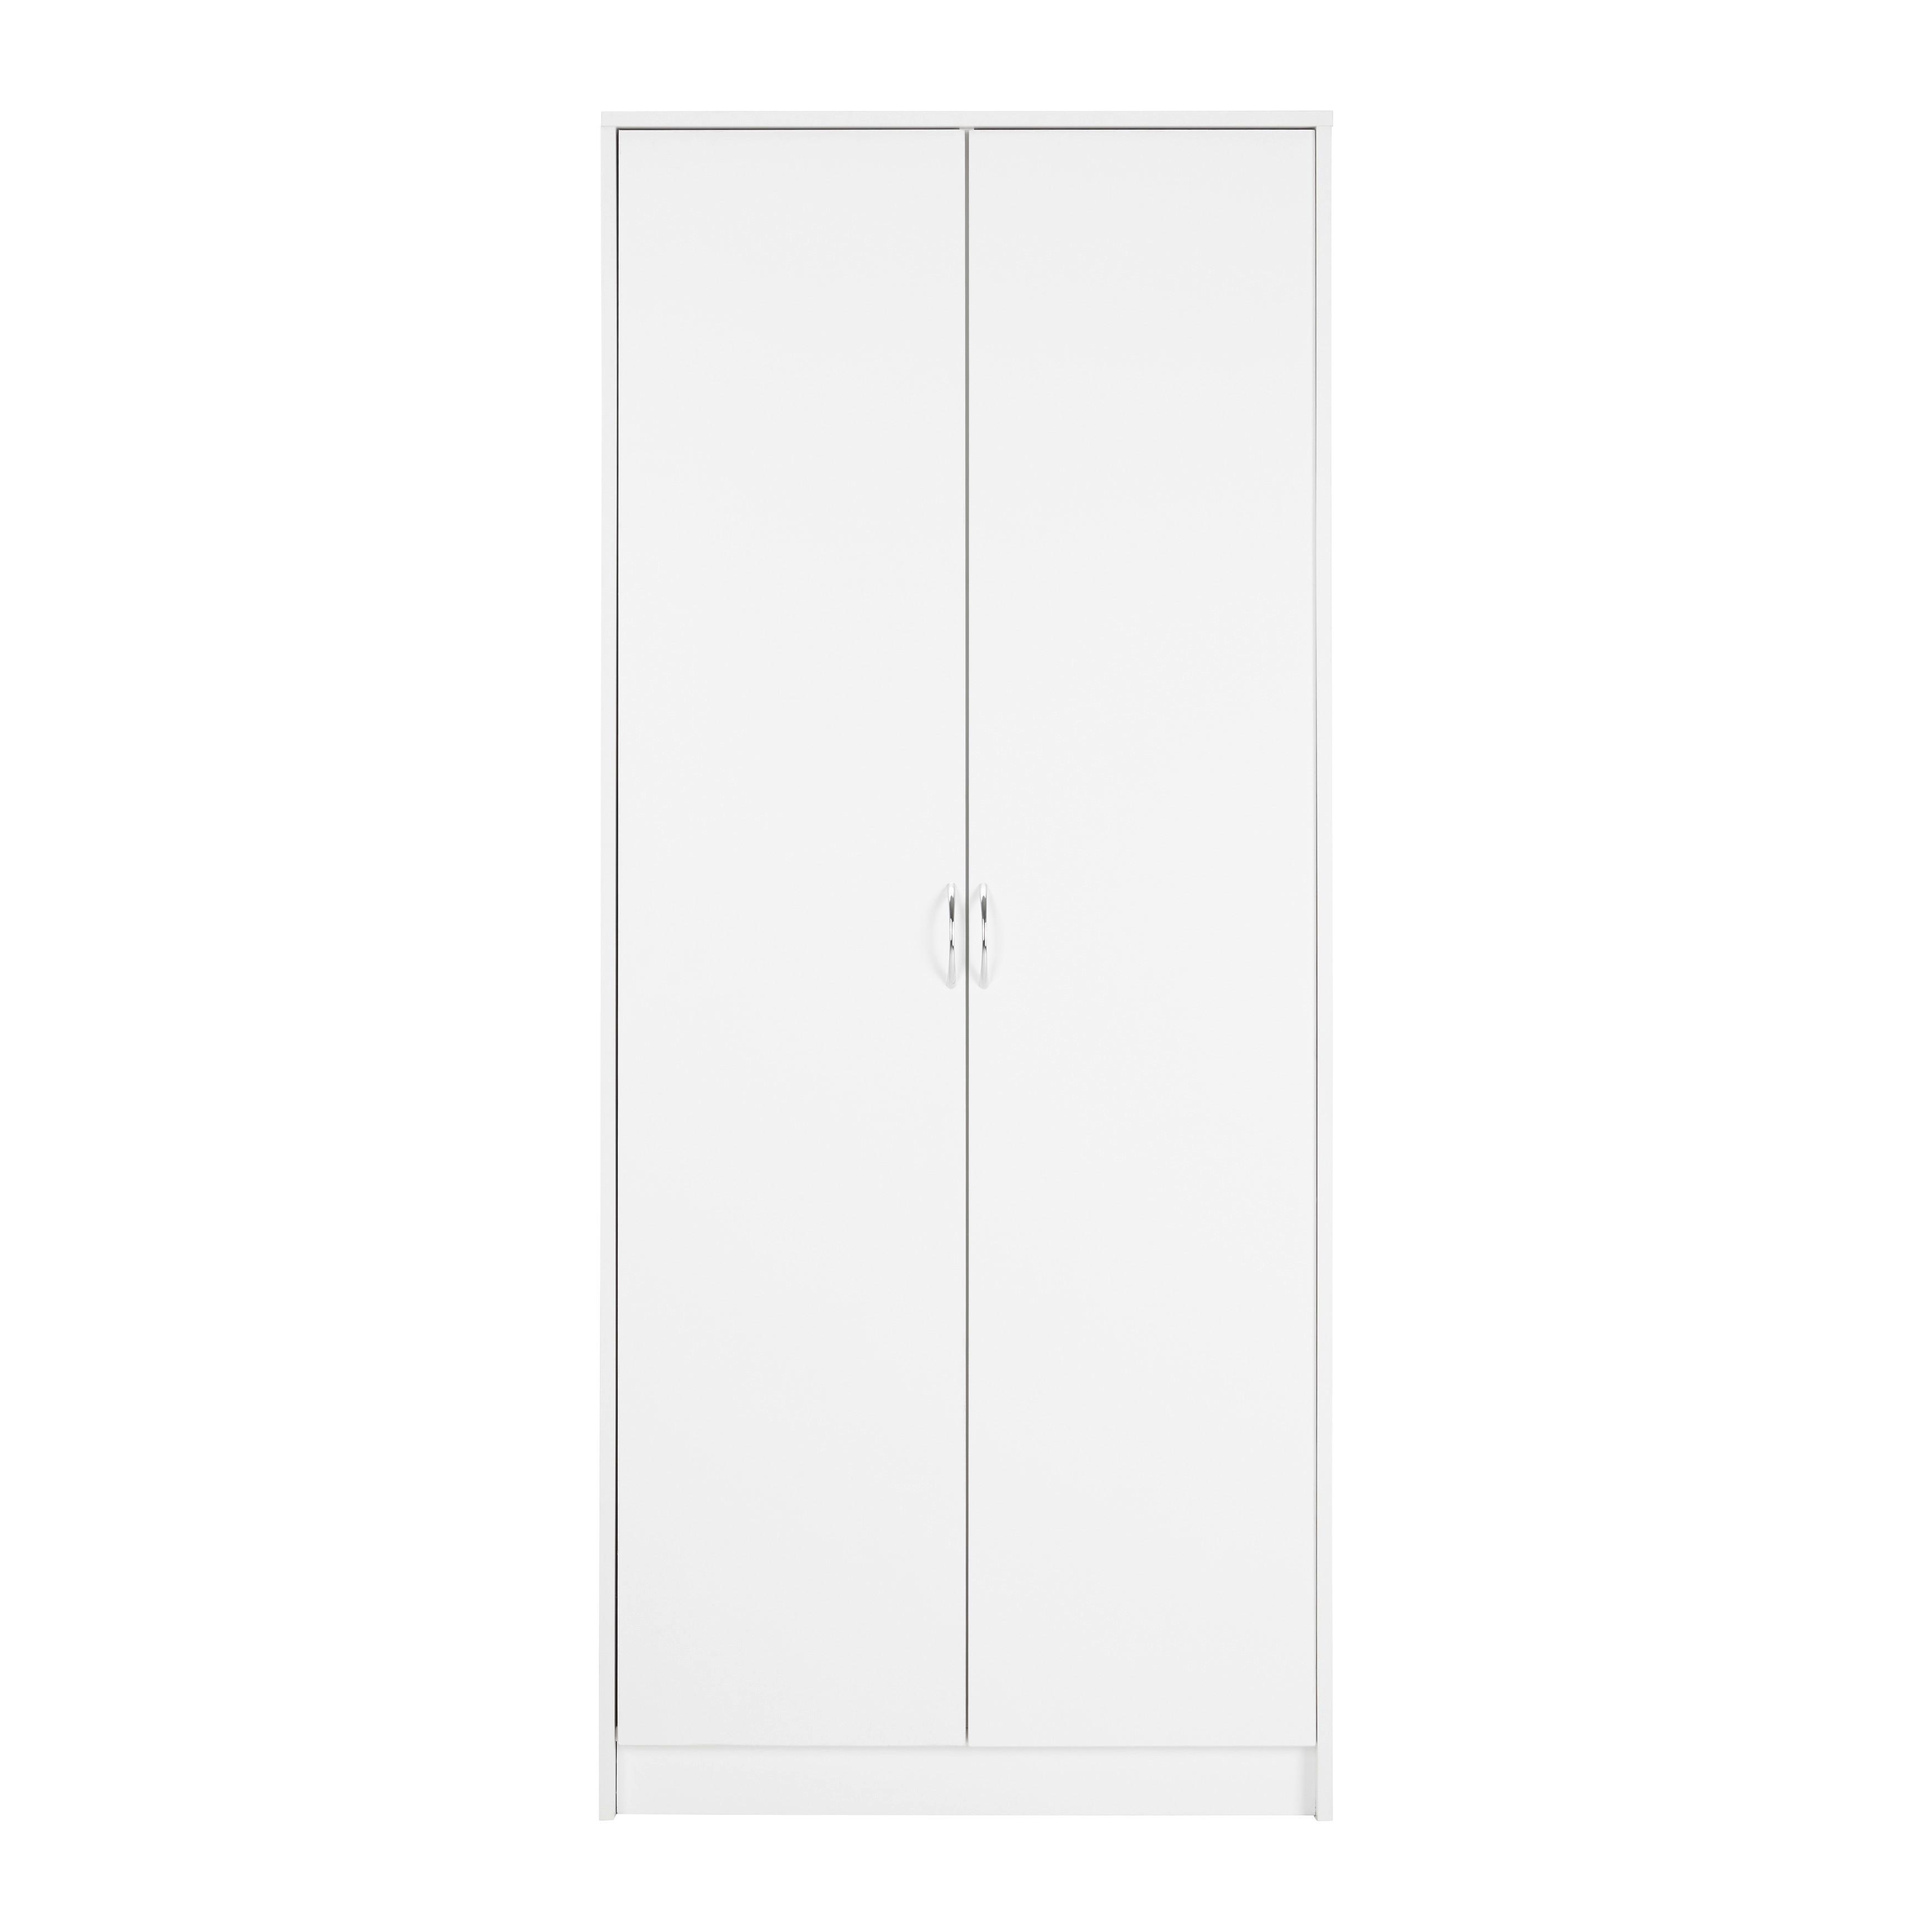 Kleiderschrank "Nika", weiß - Silberfarben/Weiß, MODERN, Holzwerkstoff/Kunststoff (75/175cm) - Bessagi Home